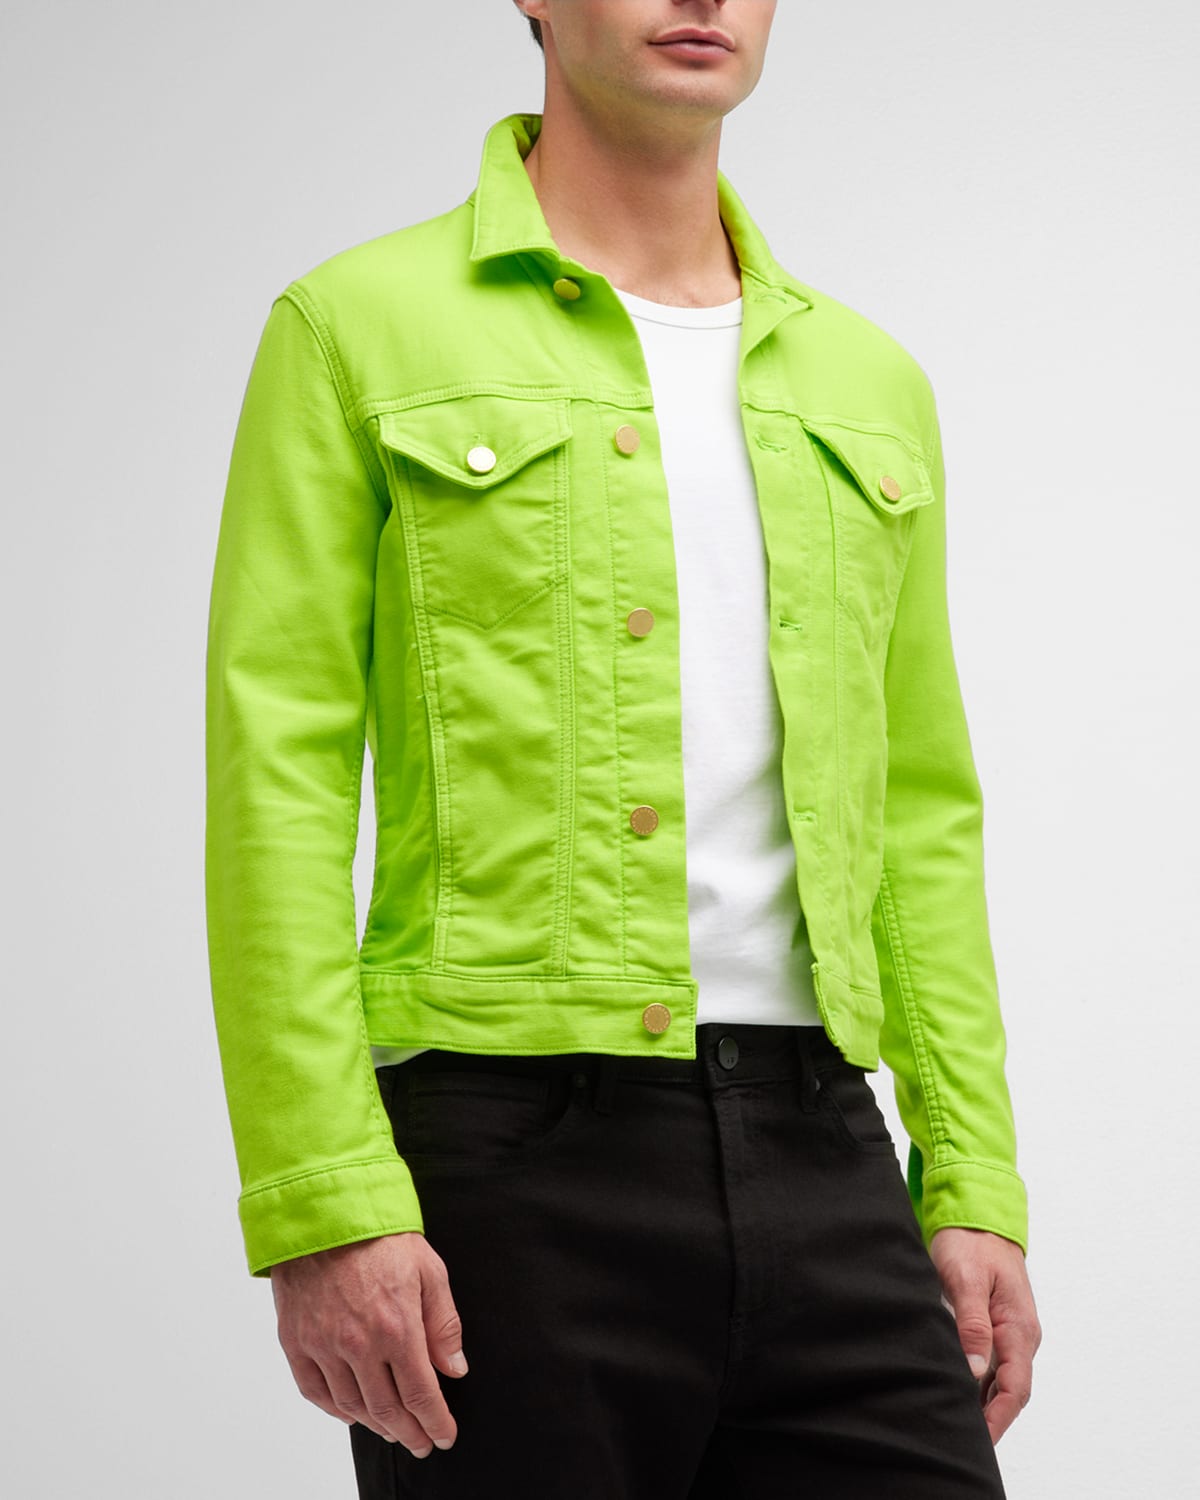 Danezon Men's Green Denim Jean Jacket